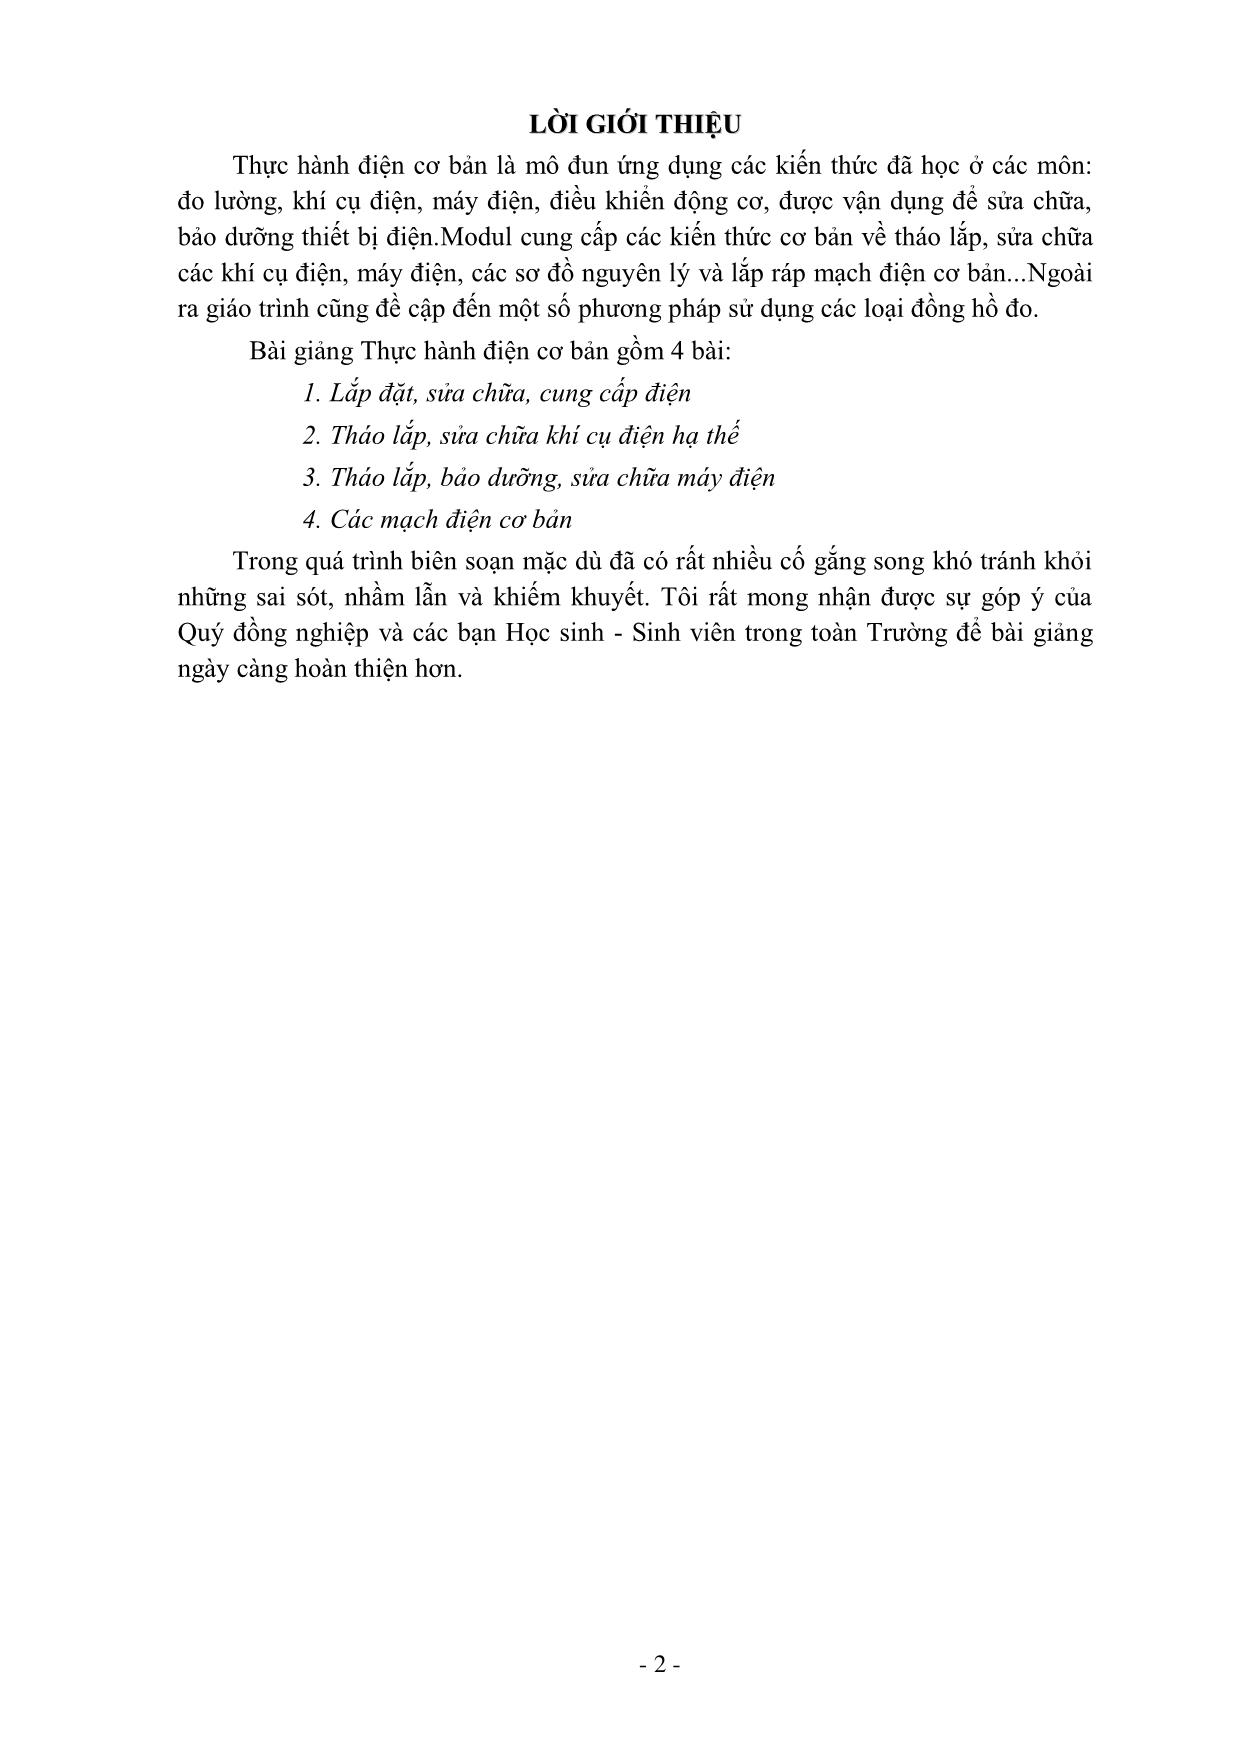 Giáo trình Thực hành điện cơ bản (Mới) trang 2